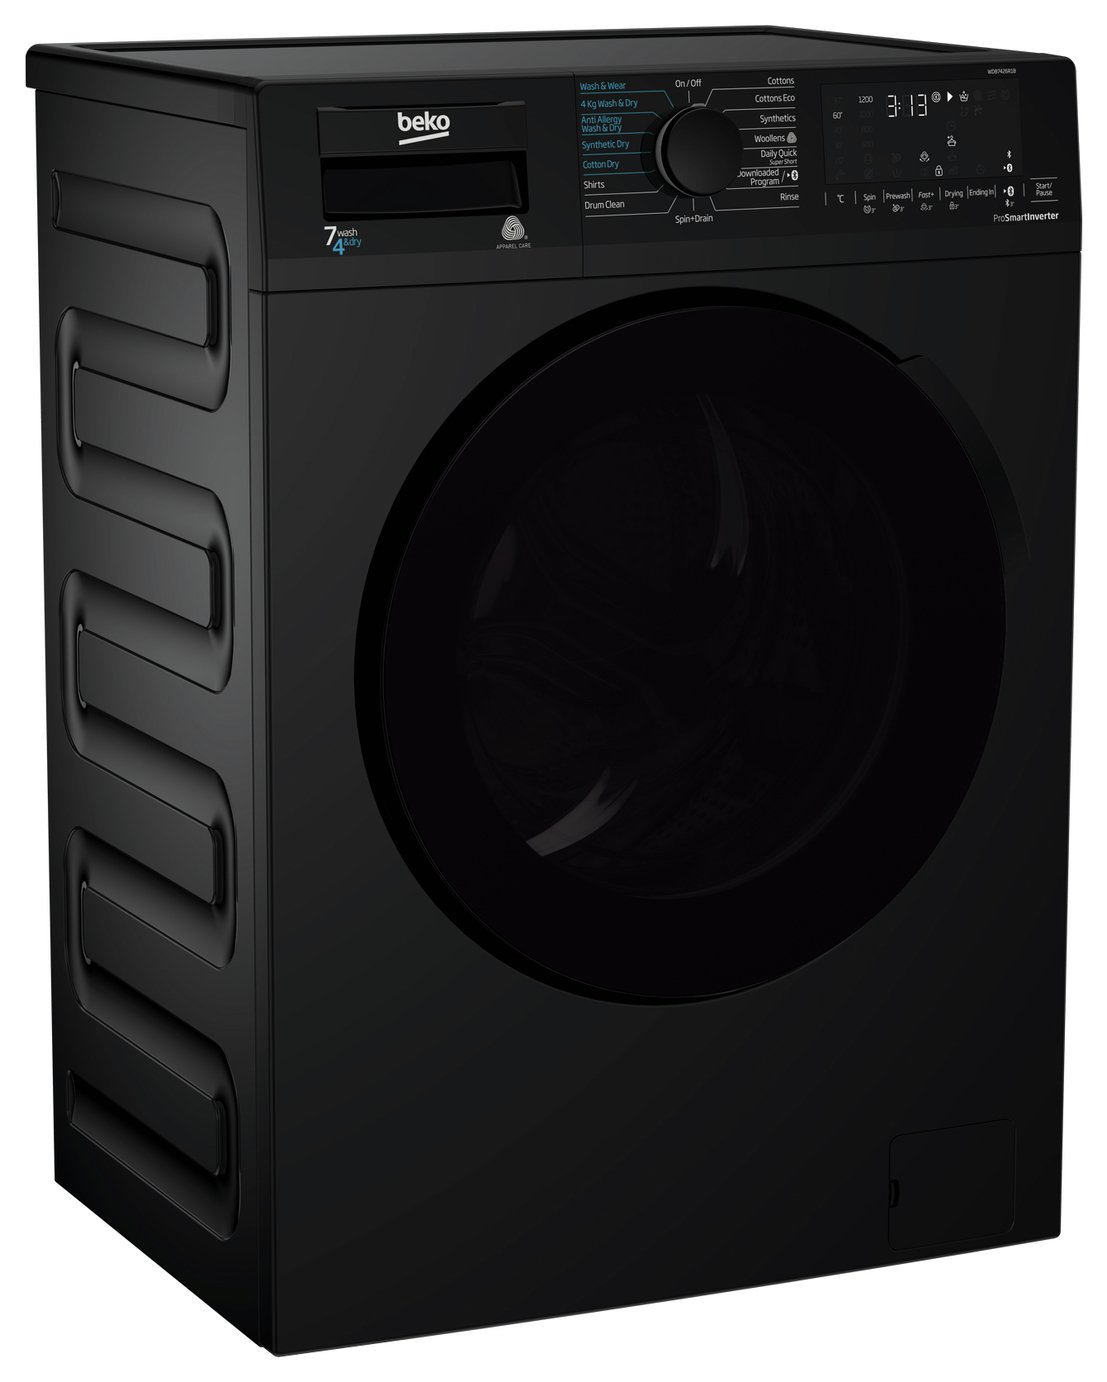 Beko WDB7426R1B 7KG / 4KG 1200 Spin Washer Dryer Review